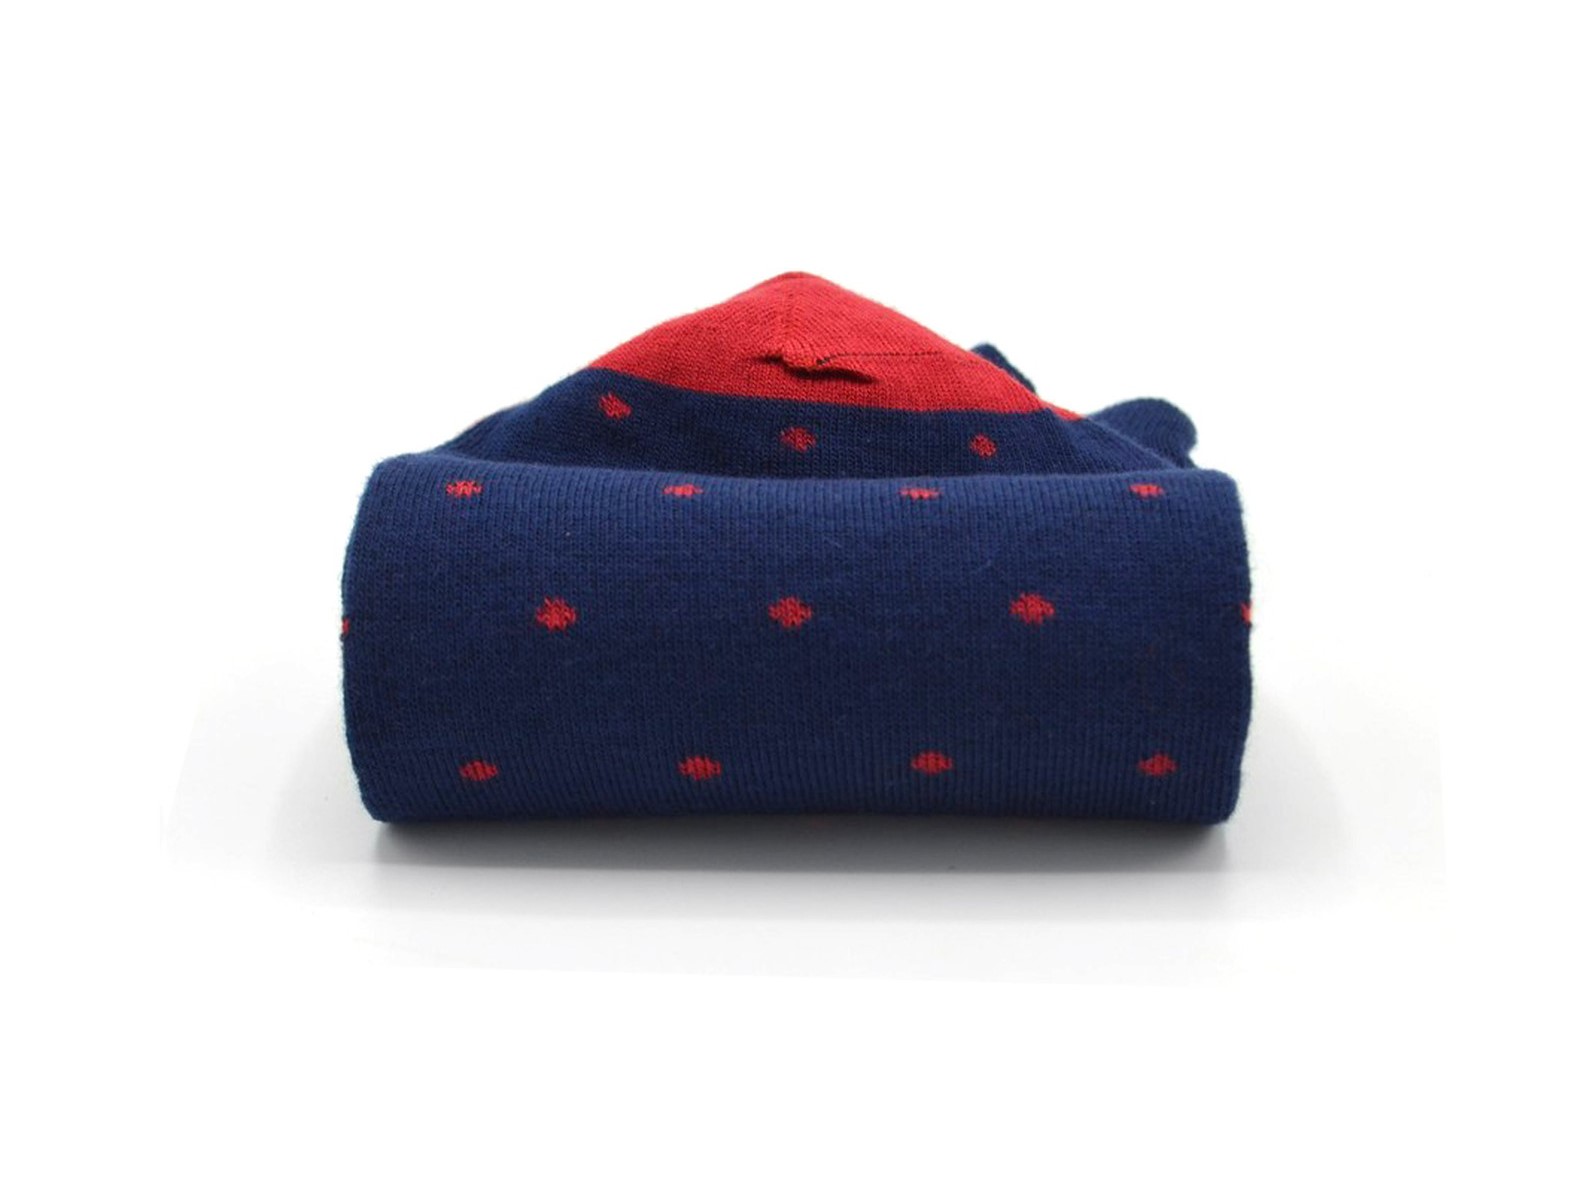 socquettes fantaisie à motifs en coton hommes femmes bleu marine pois rouges